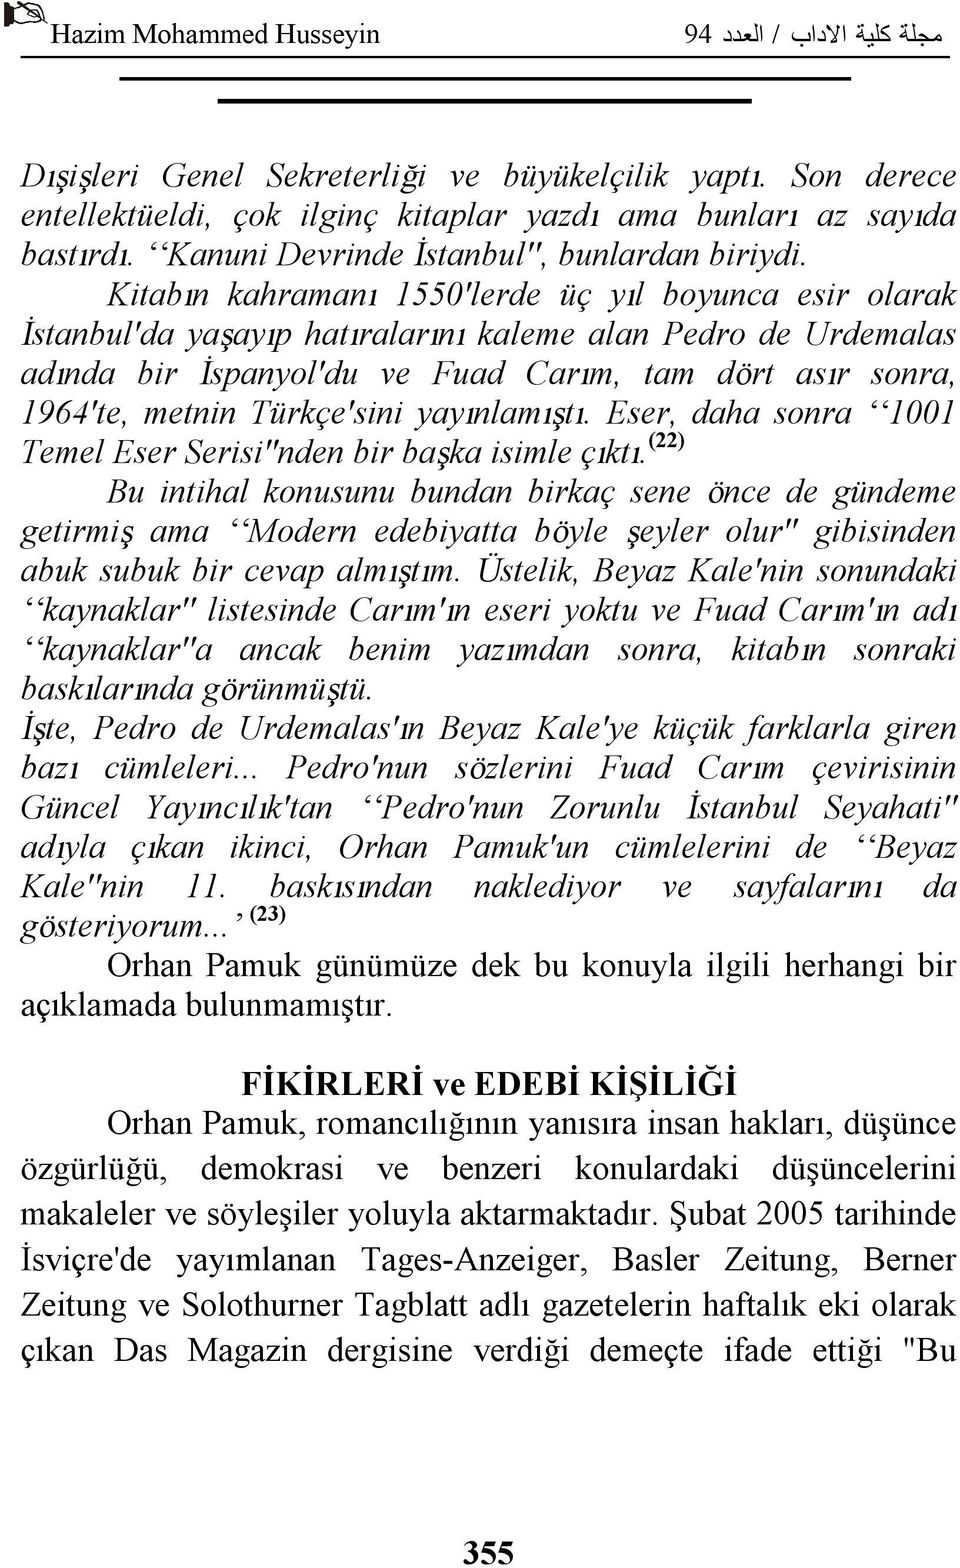 Türkçe'sini yayınlamıştı. Eser, daha sonra 1001 Temel Eser Serisi''nden bir başka isimle çıktı.